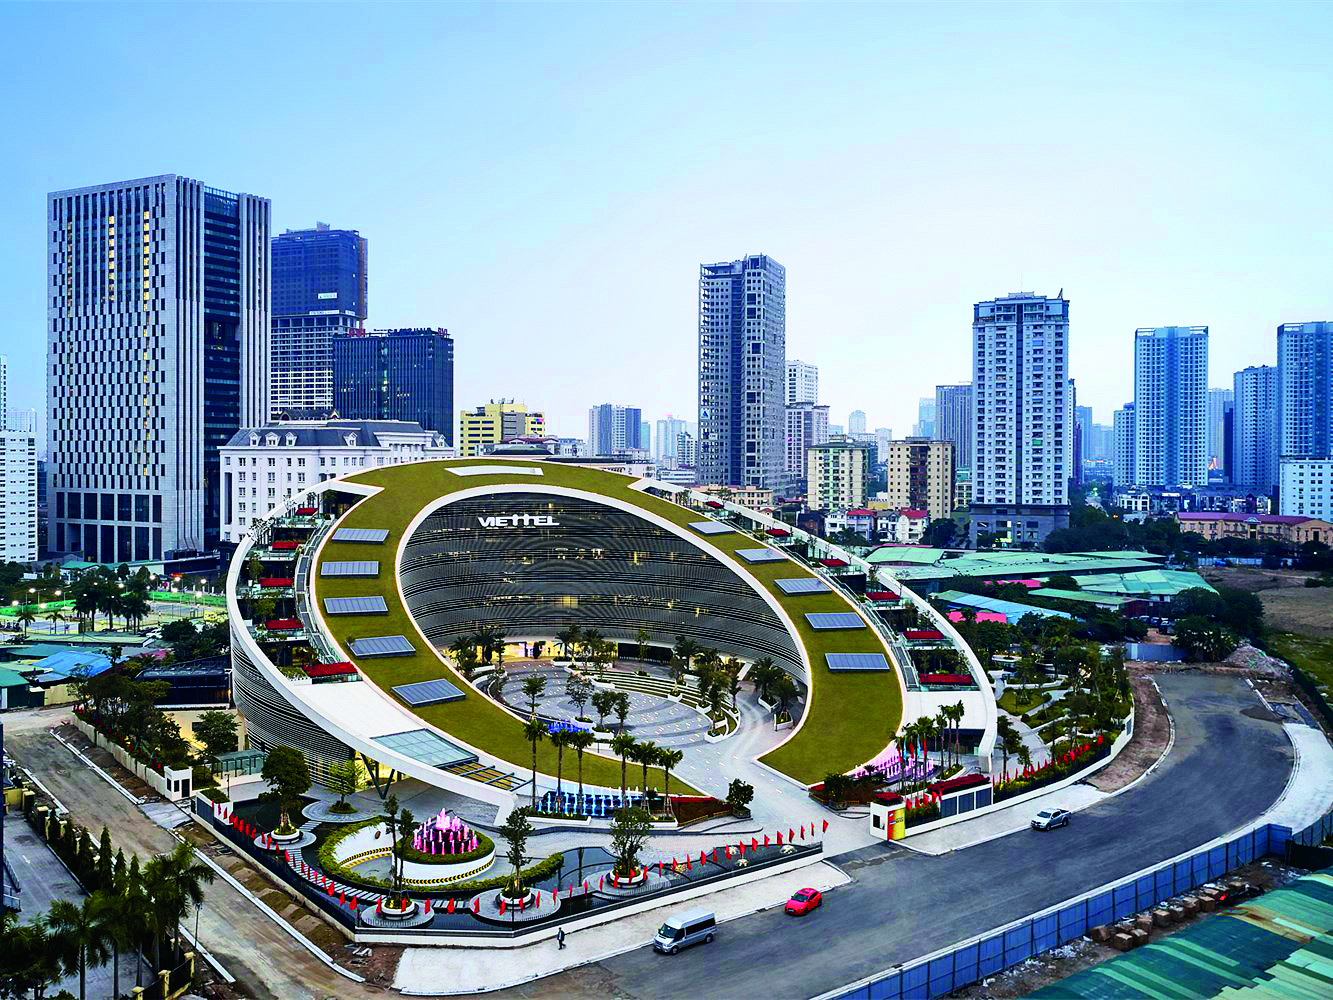 Das vom amerikanischen Architekturbüro Gensler entworfene Gebäude besteht aus einem ansteigenden Oval mit begrüntem Dach, das an das Firmen-Logo angelehnt ist.